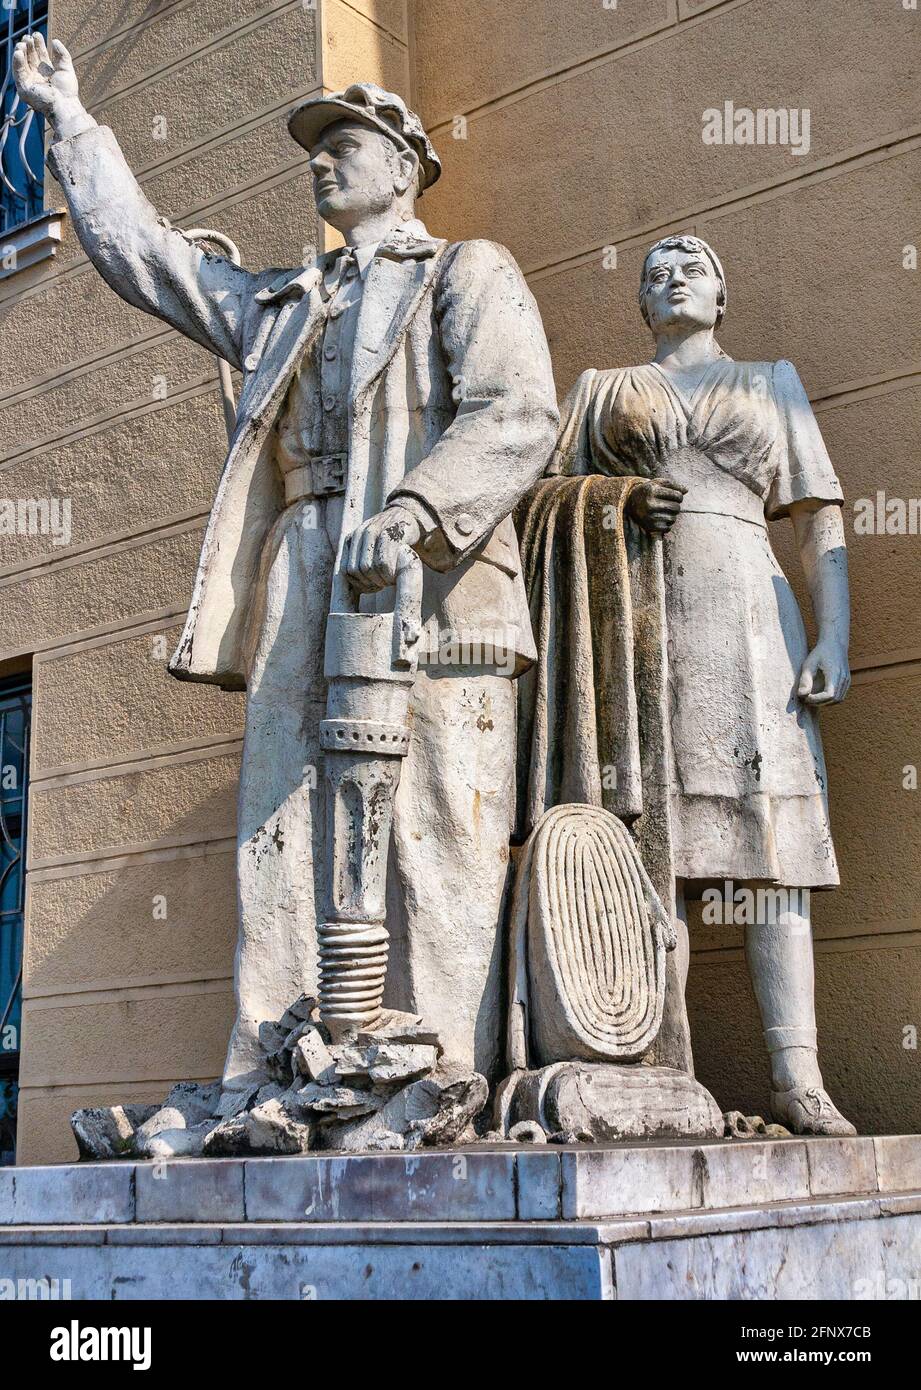 L'ancienne statue soviétique de la femme et de la travailleuse. Sculptures du prolétariat près de l'entrée de la gare de Mukachevo, Ukraine. Banque D'Images